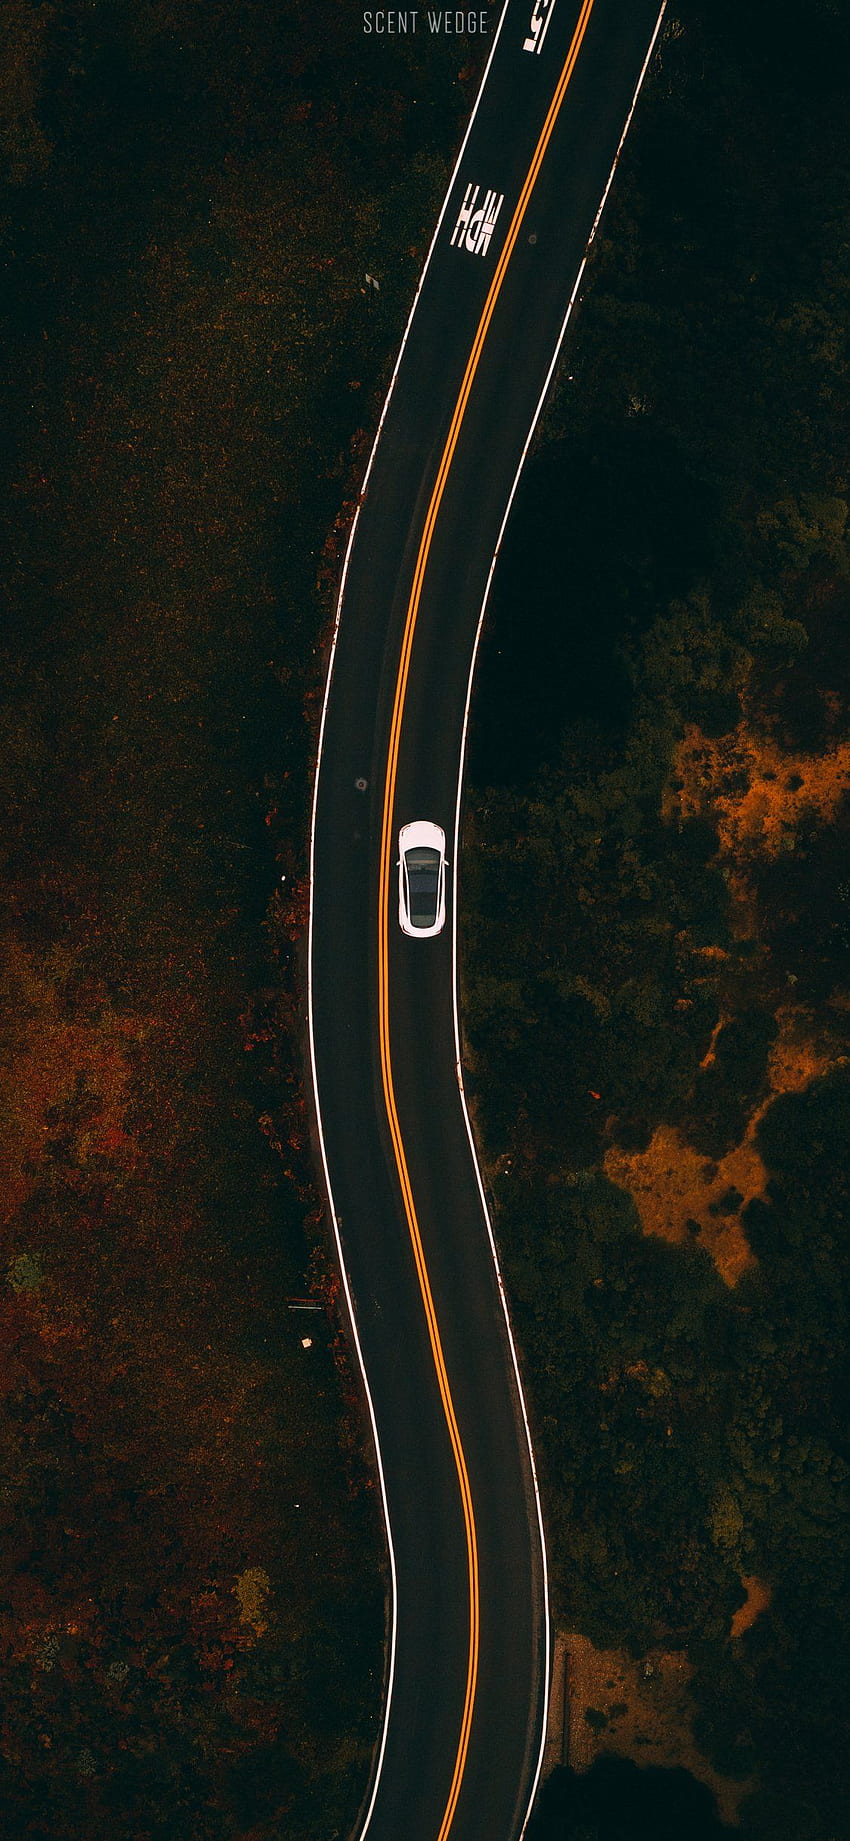 Tesla Model 3 iPhone X – Scent Wedge HD phone wallpaper